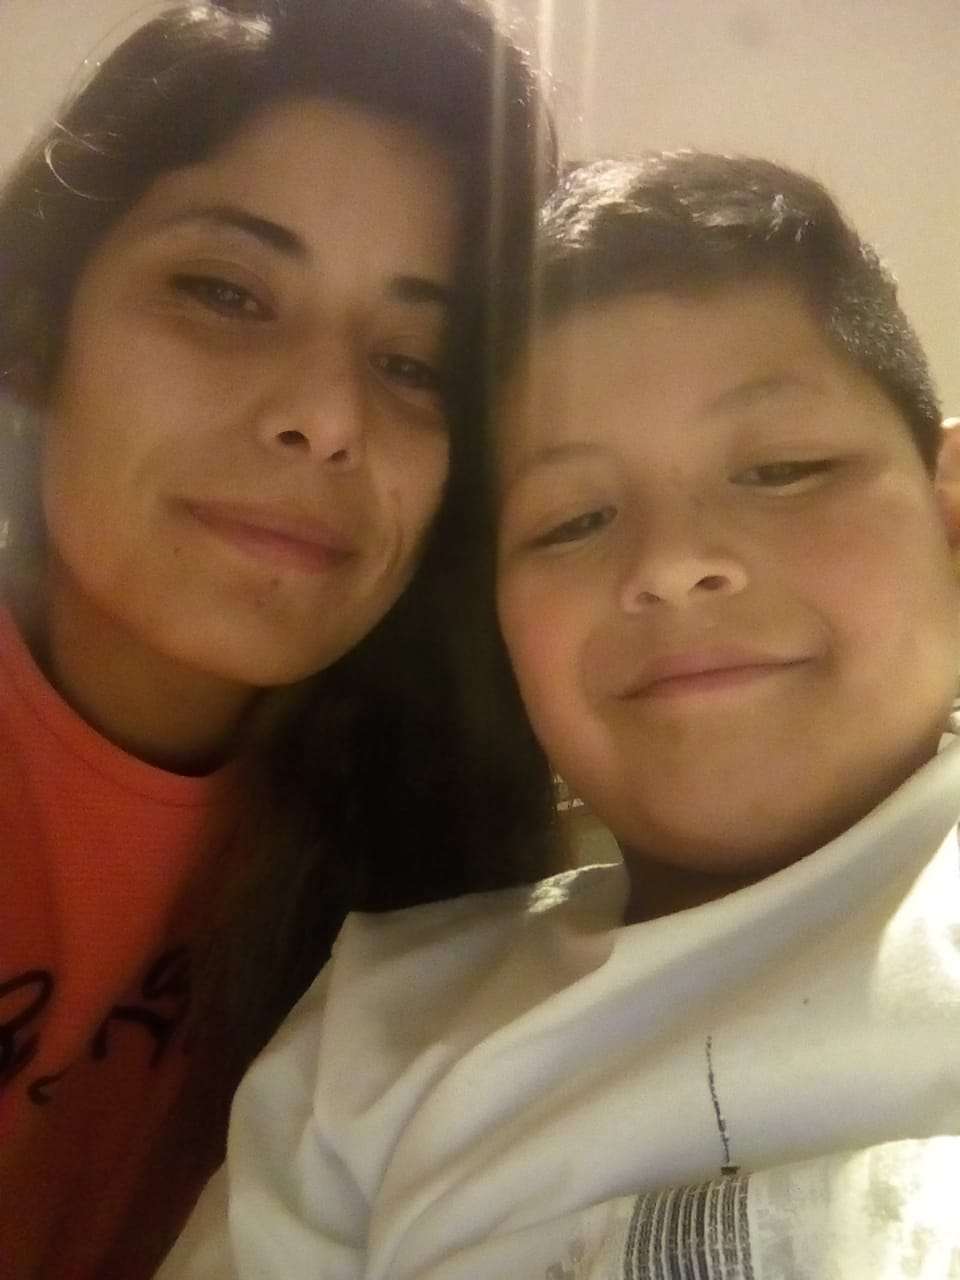 La madre de un niño con cáncer pide ayuda para continuar el tratamiento en Buenos Aires junto a su familia